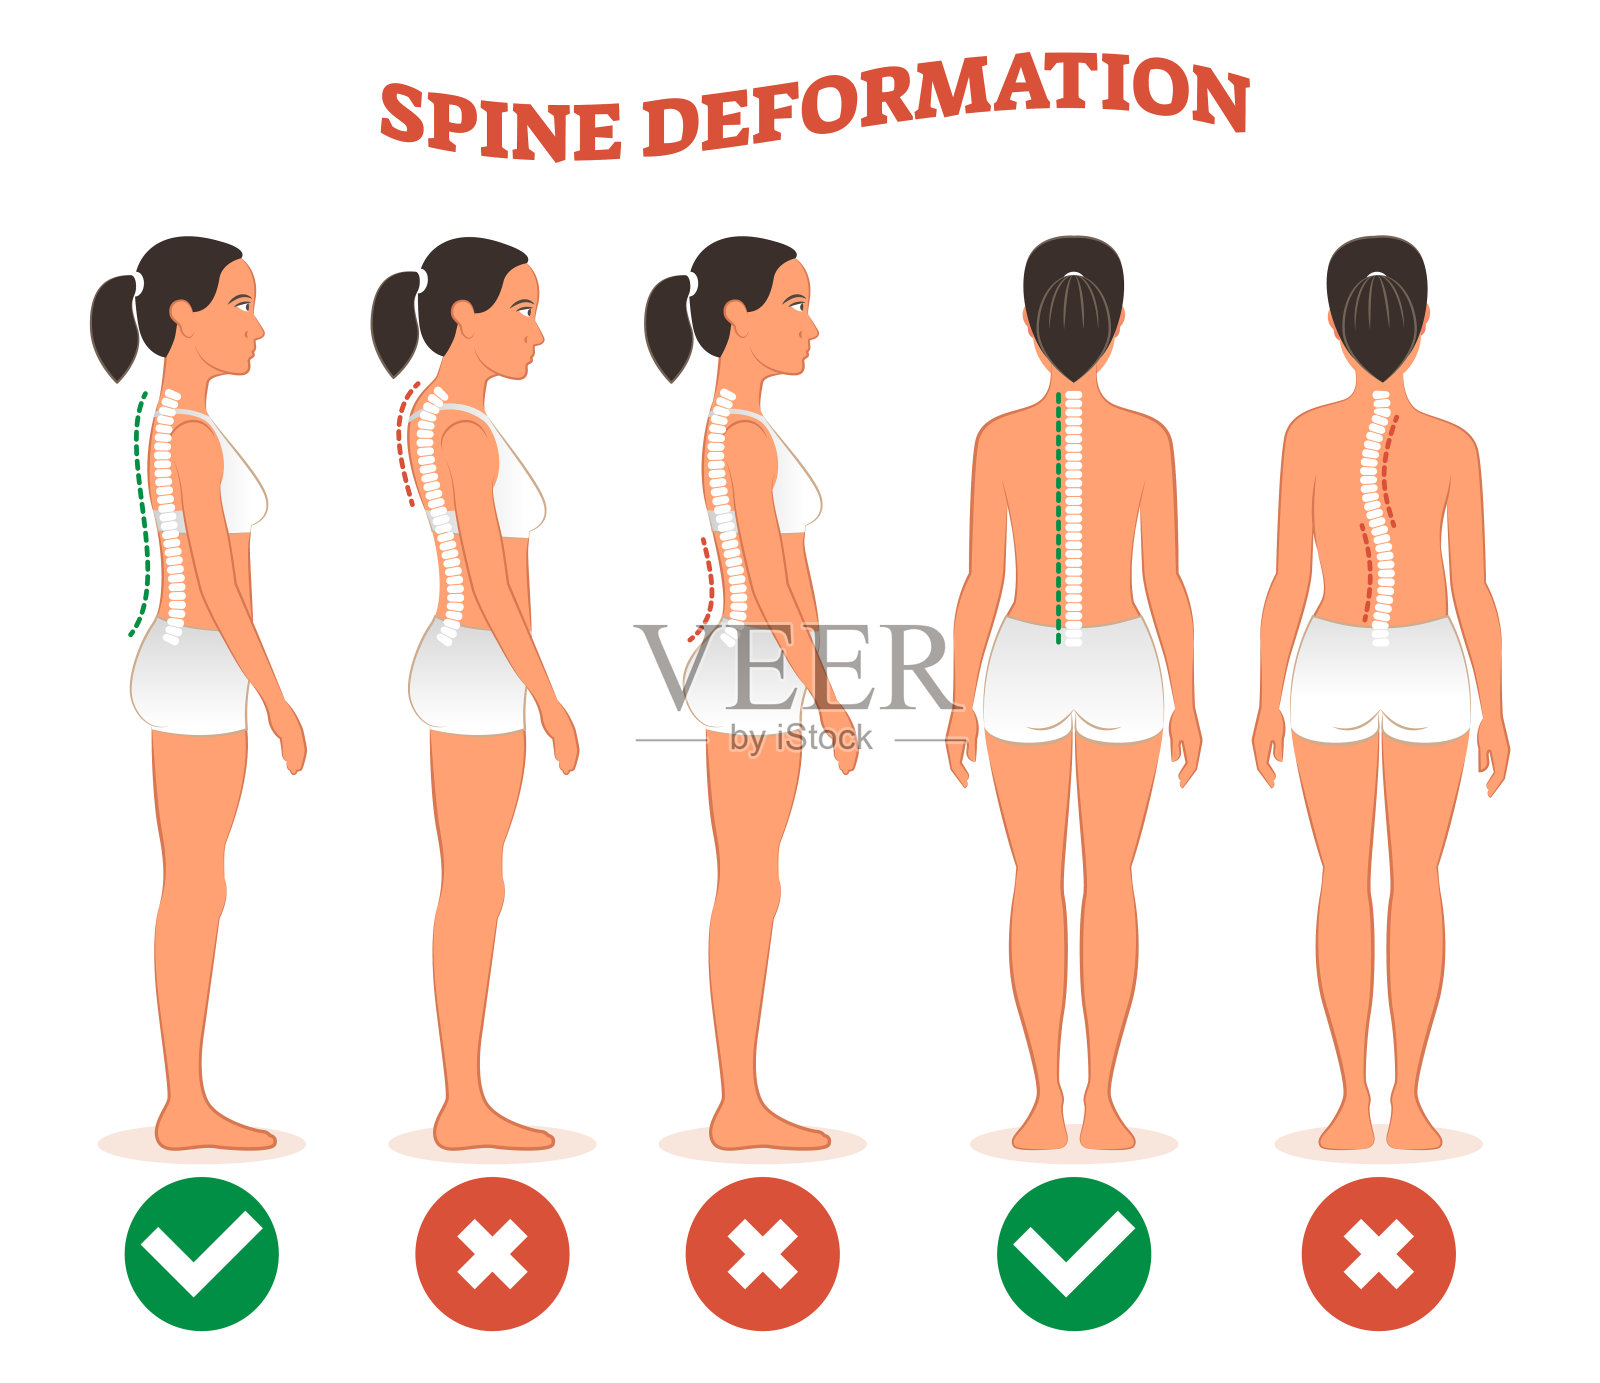 脊柱变形类型与健康脊柱对比图海报。插画图片素材